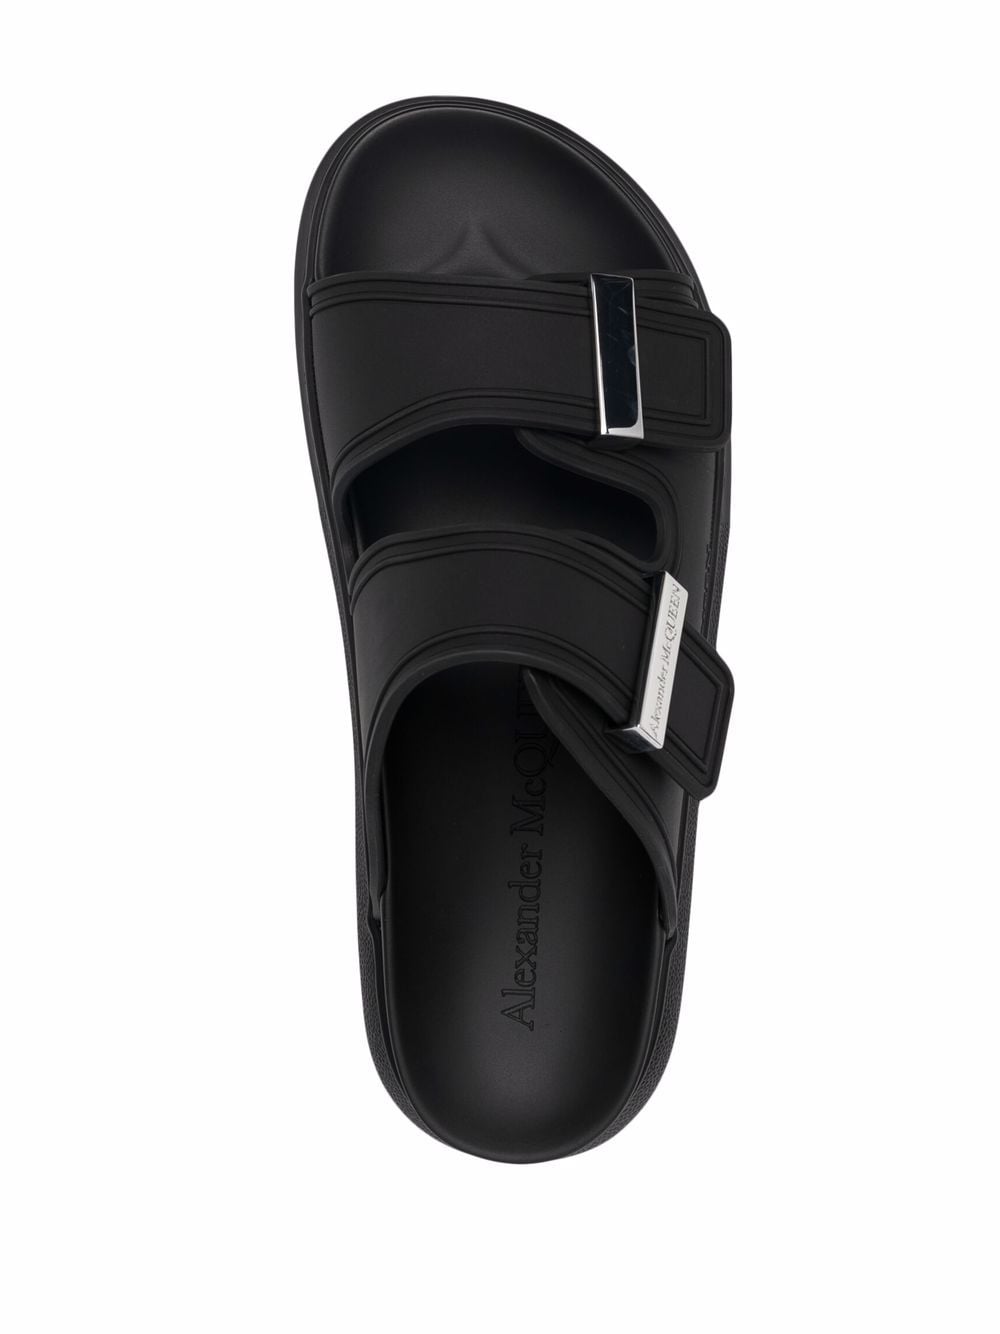 Hybrid flatform sandals<BR/><BR/><BR/>